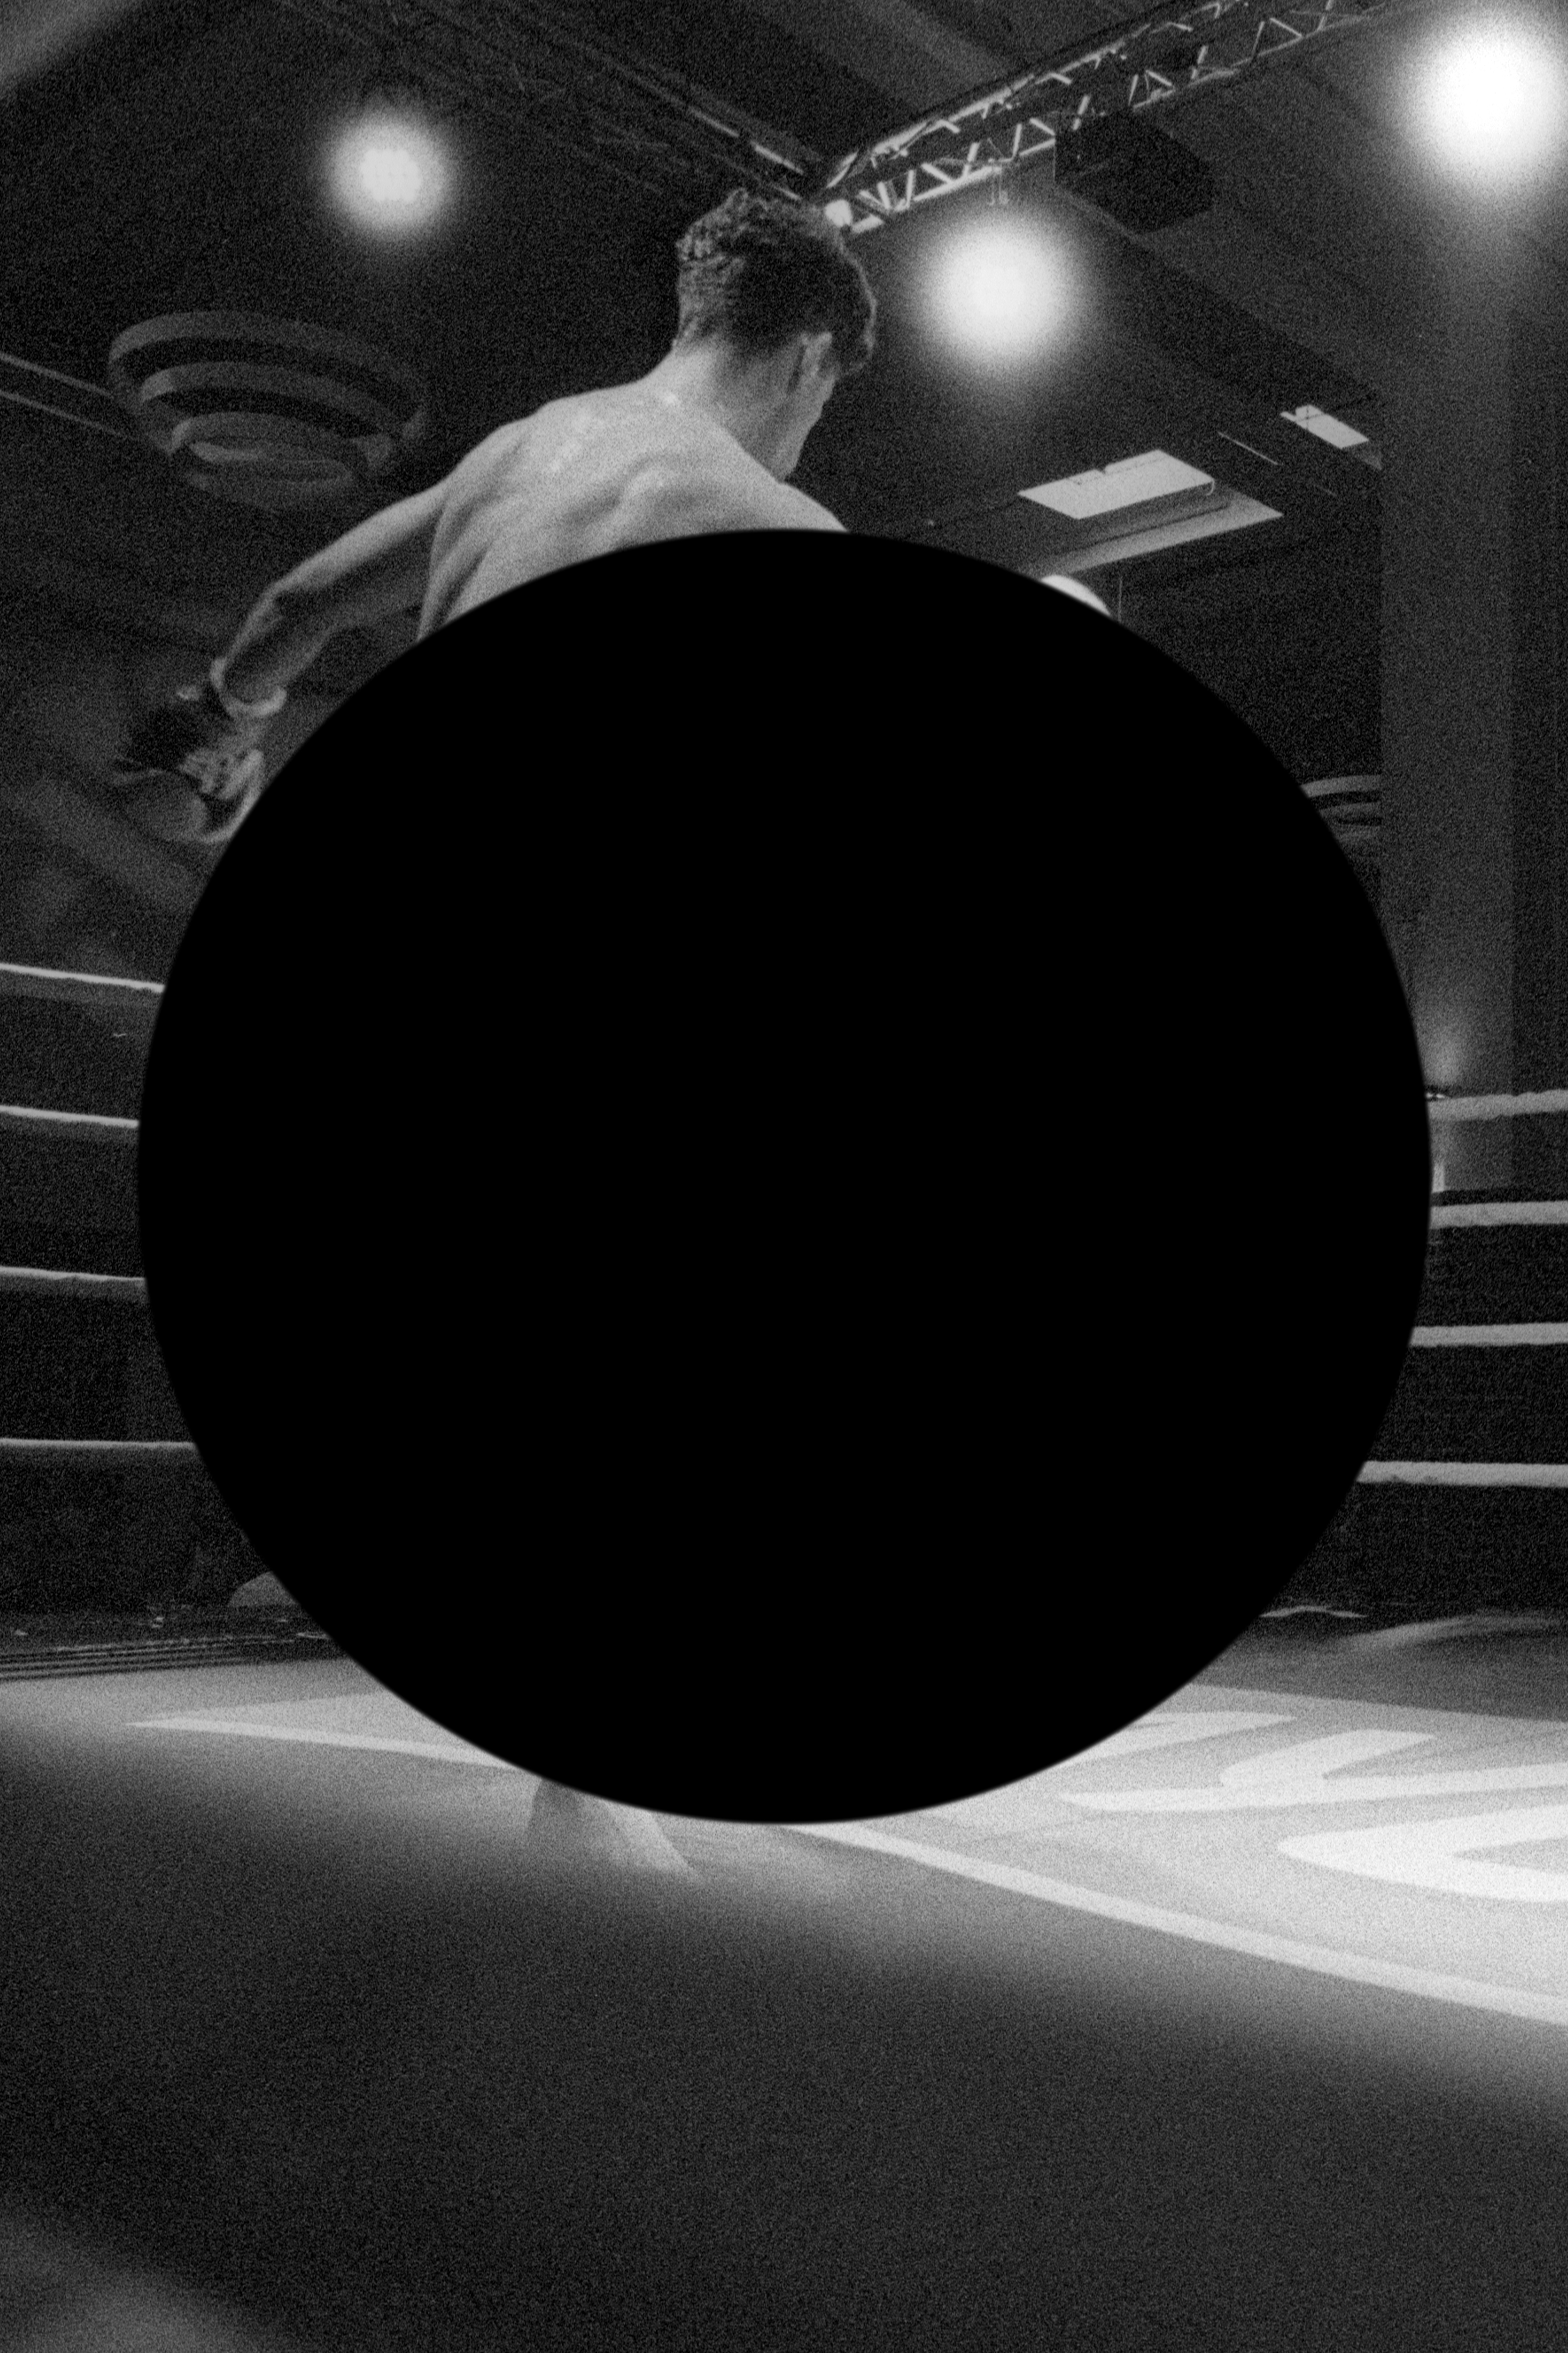 Stephan Machac CUE MARK - НАШ ВЕК 2021 »CUE MARK - НАШ ВЕК«  - Set 2 / Bild 11 - 2020 - Inkjet Print - 160 x 240 cm